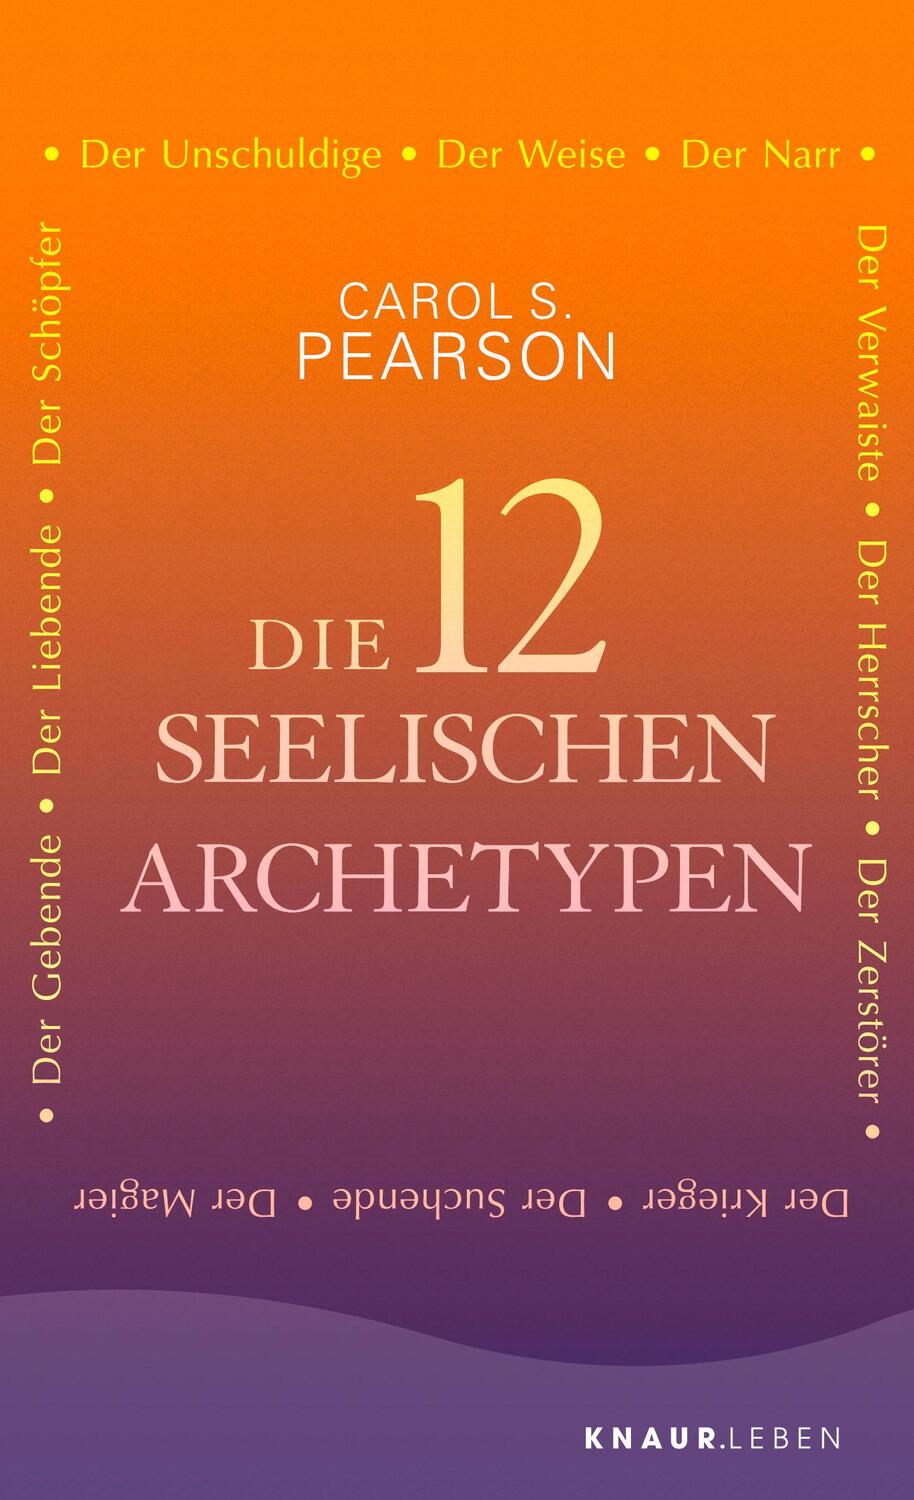 Die 12 seelischen Archetypen - Pearson, Carol S.